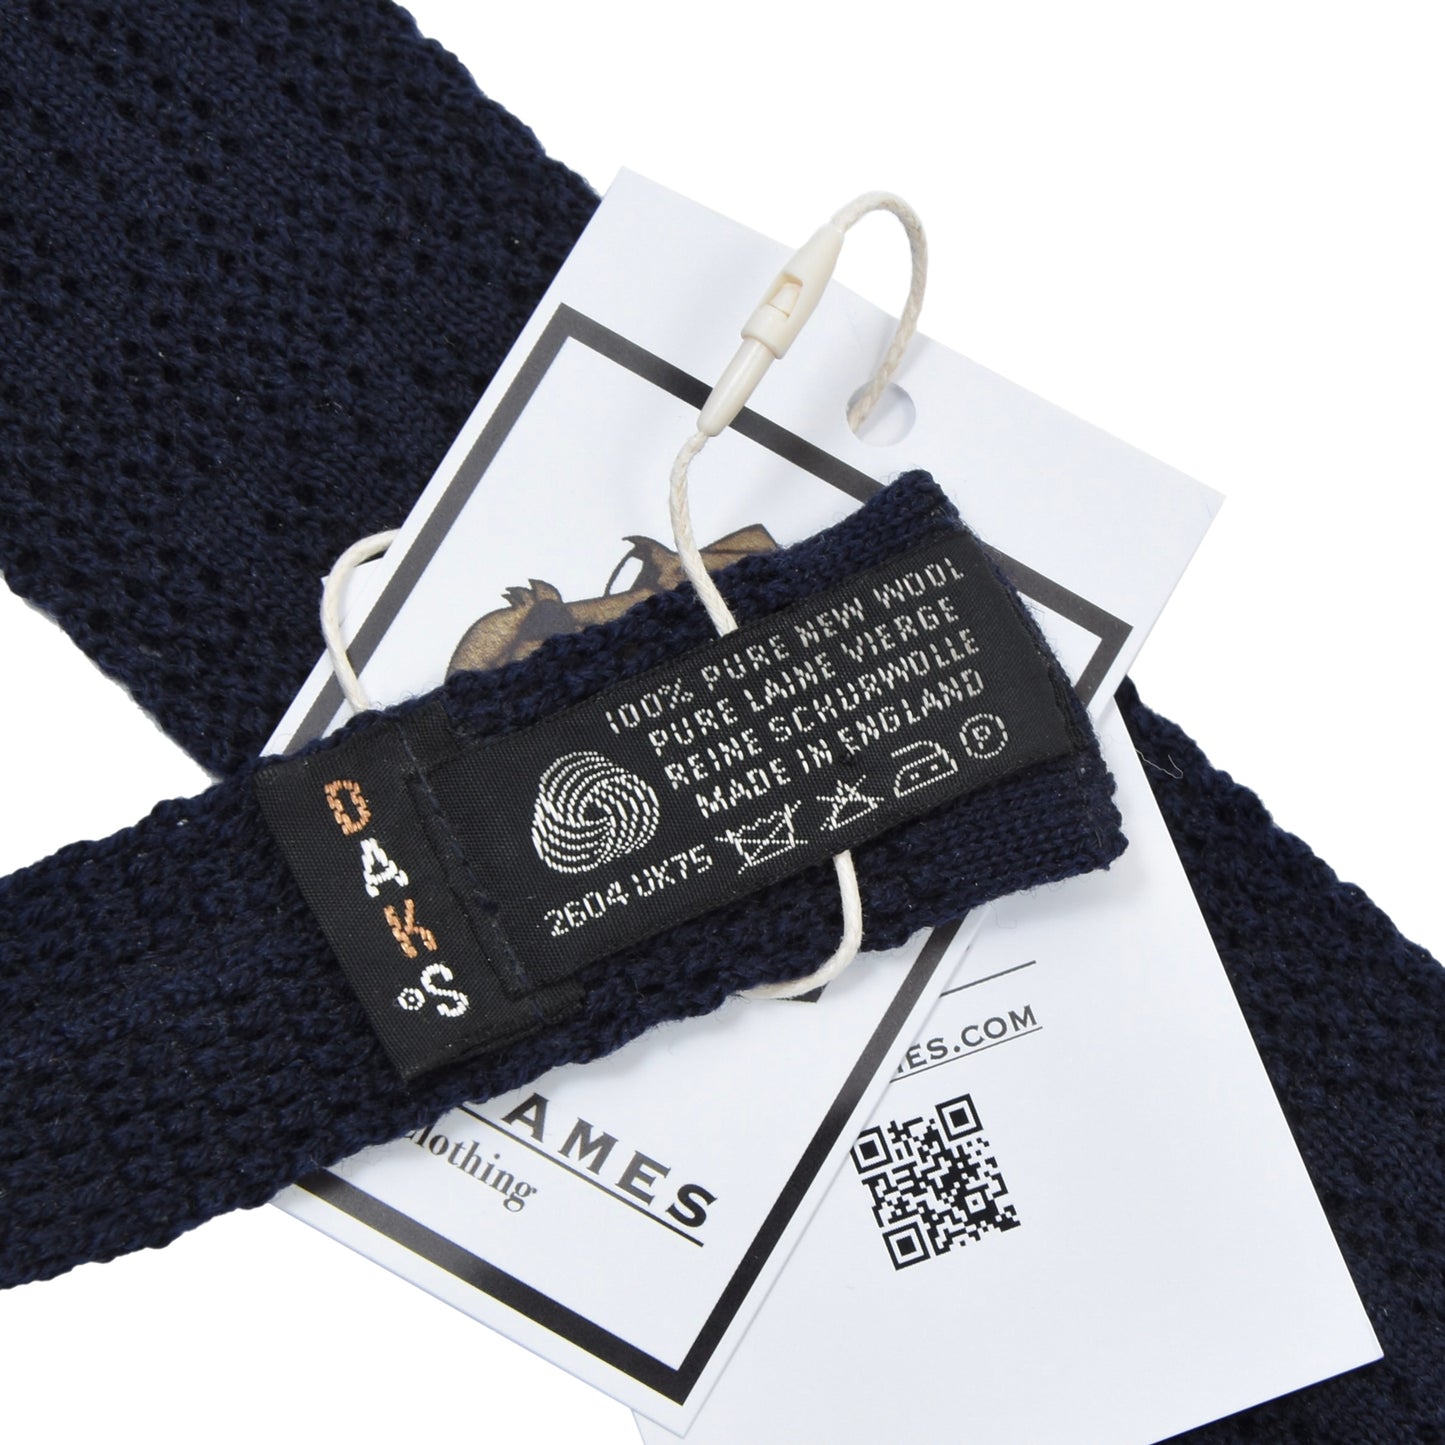 DAKS London Knit Wool Tie ca. 144cm/5.5cm - Navy Blue